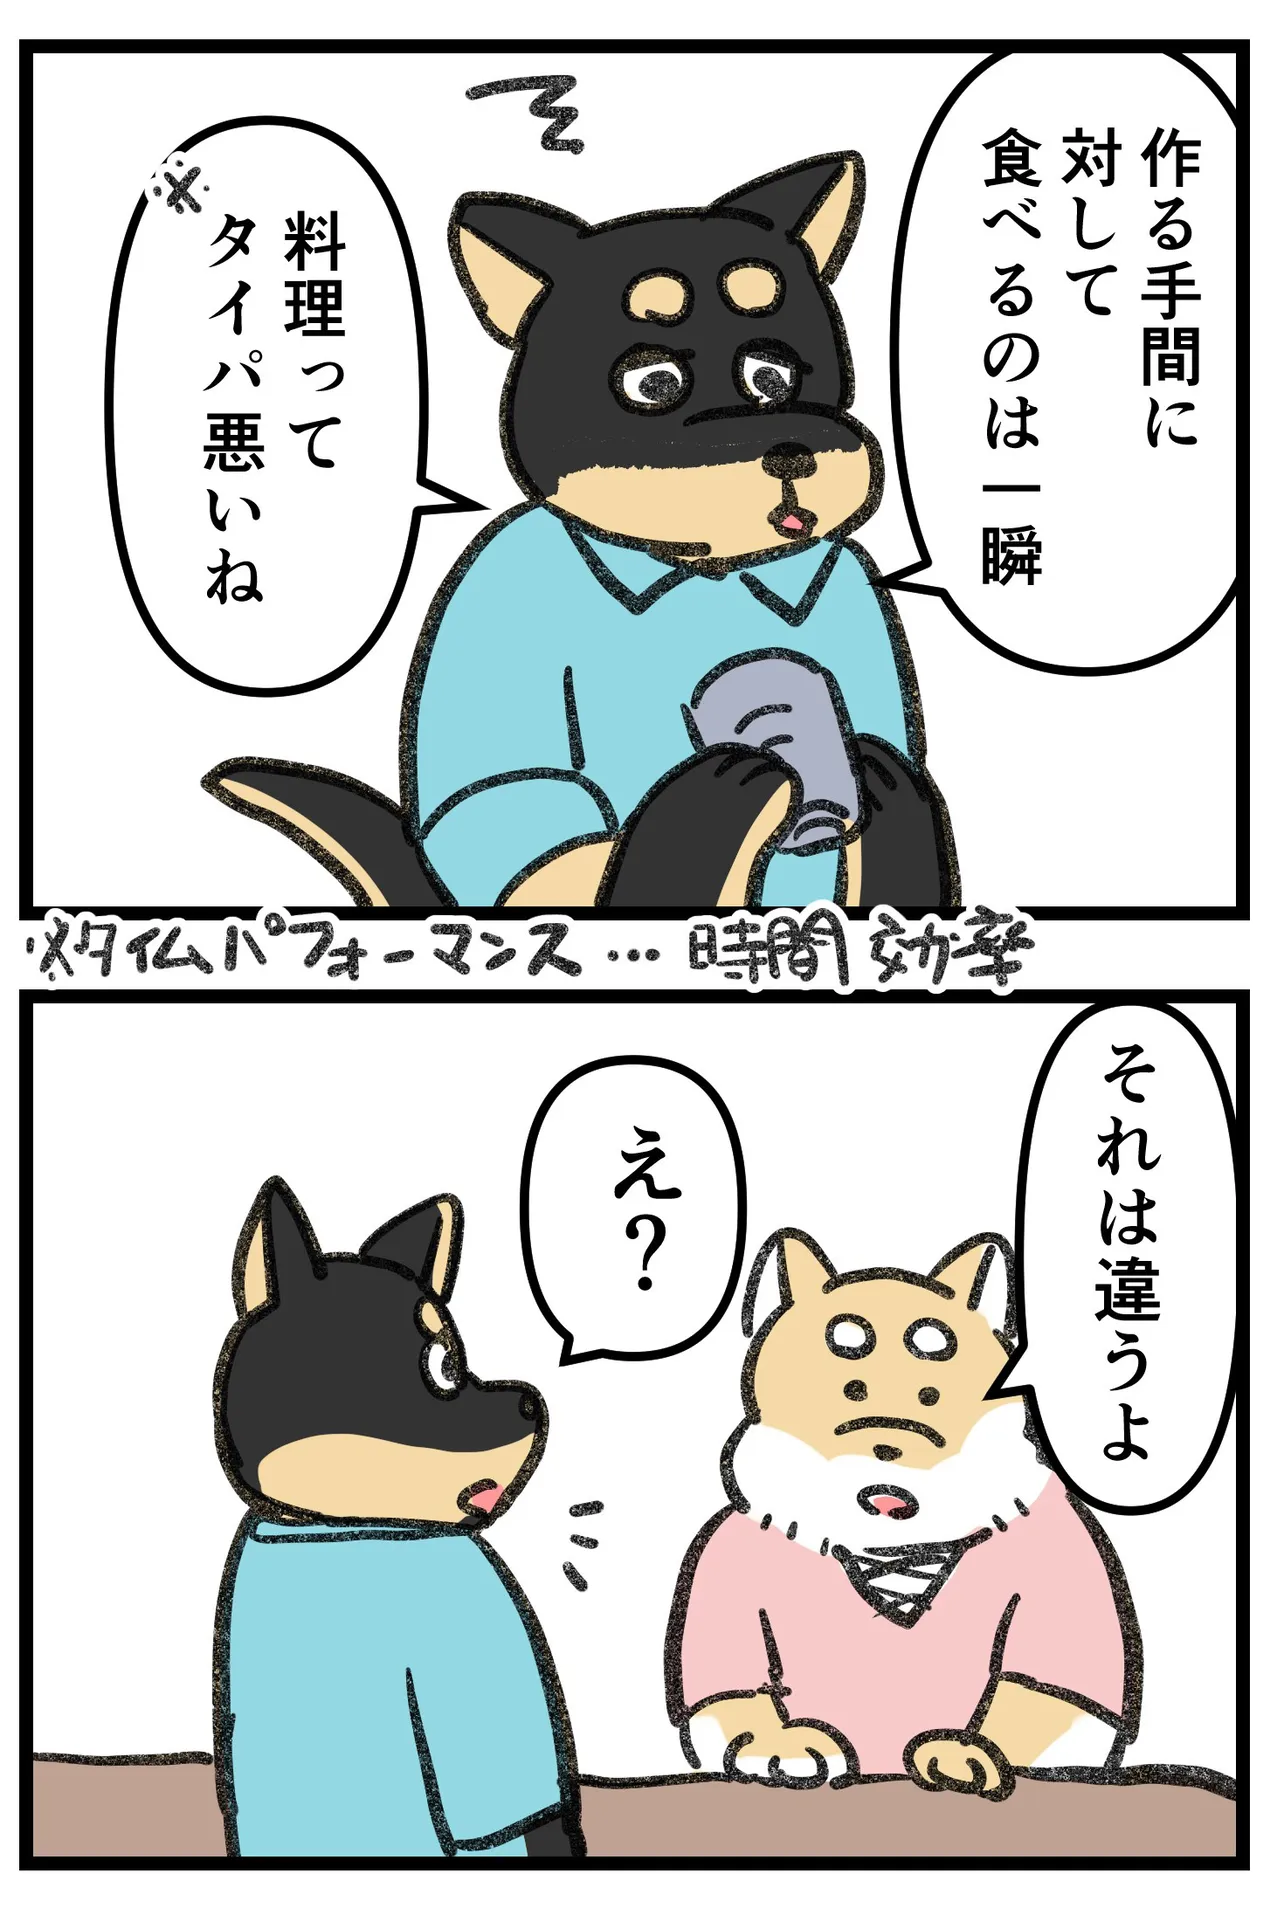 『柴犬二匹が山菜の天ぷらを作って食べる話』(14/16)